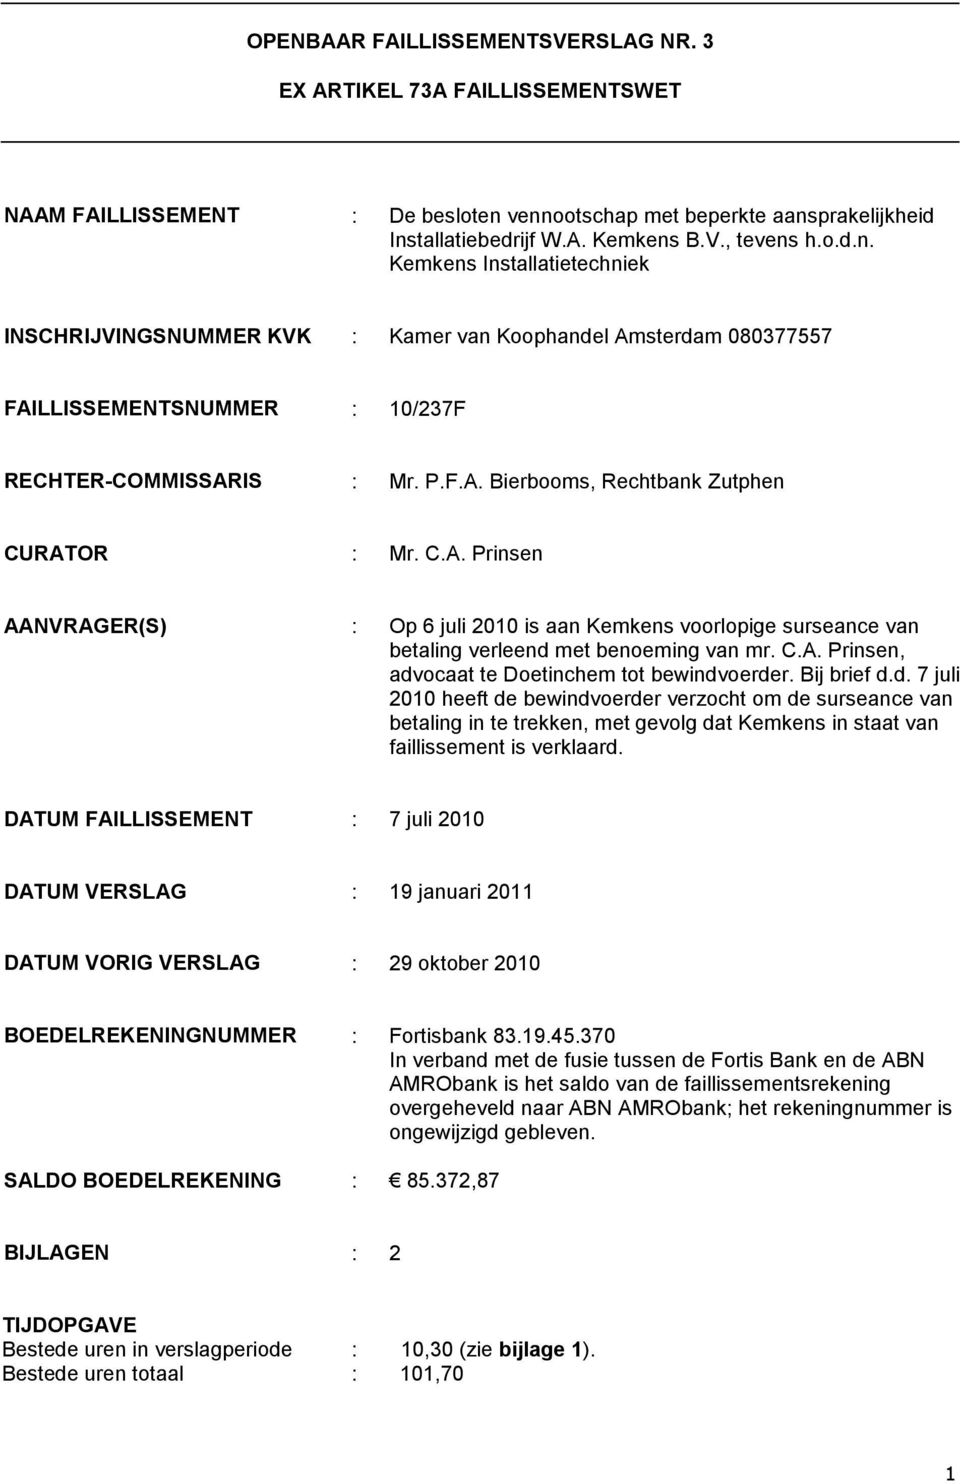 P.F.A. Bierbooms, Rechtbank Zutphen CURATOR : Mr. C.A. Prinsen AANVRAGER(S) : Op 6 juli 2010 is aan Kemkens voorlopige surseance van betaling verleend met benoeming van mr. C.A. Prinsen, advocaat te Doetinchem tot bewindvoerder.